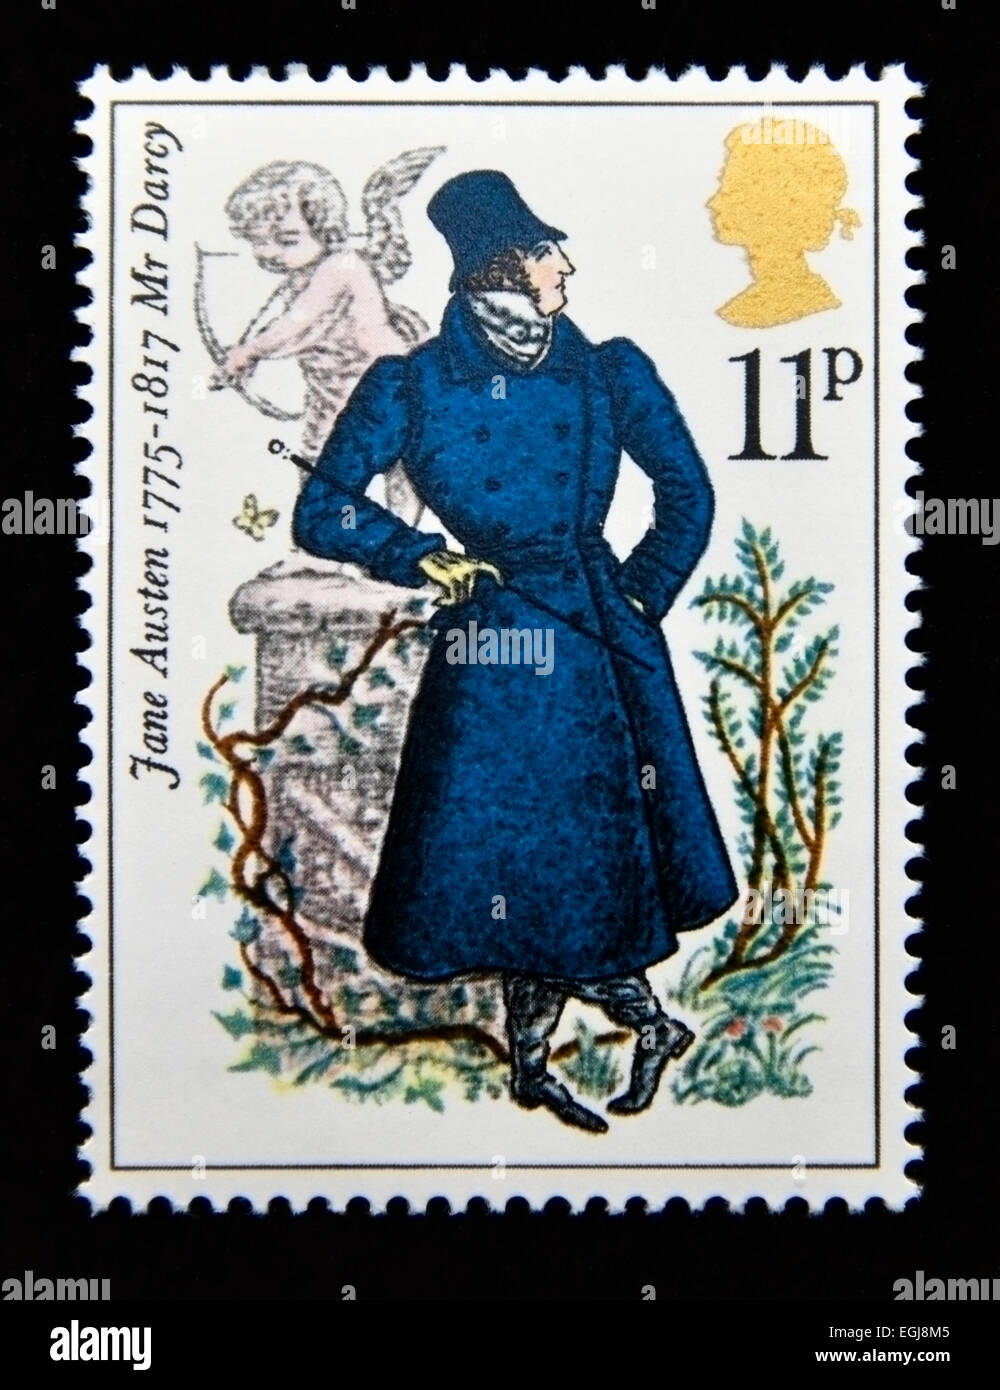 Postage stamp. Great Britain. Queen Elizabeth II. 1975. Birth Bicentenary of Jane Austen (novelist). Stock Photo